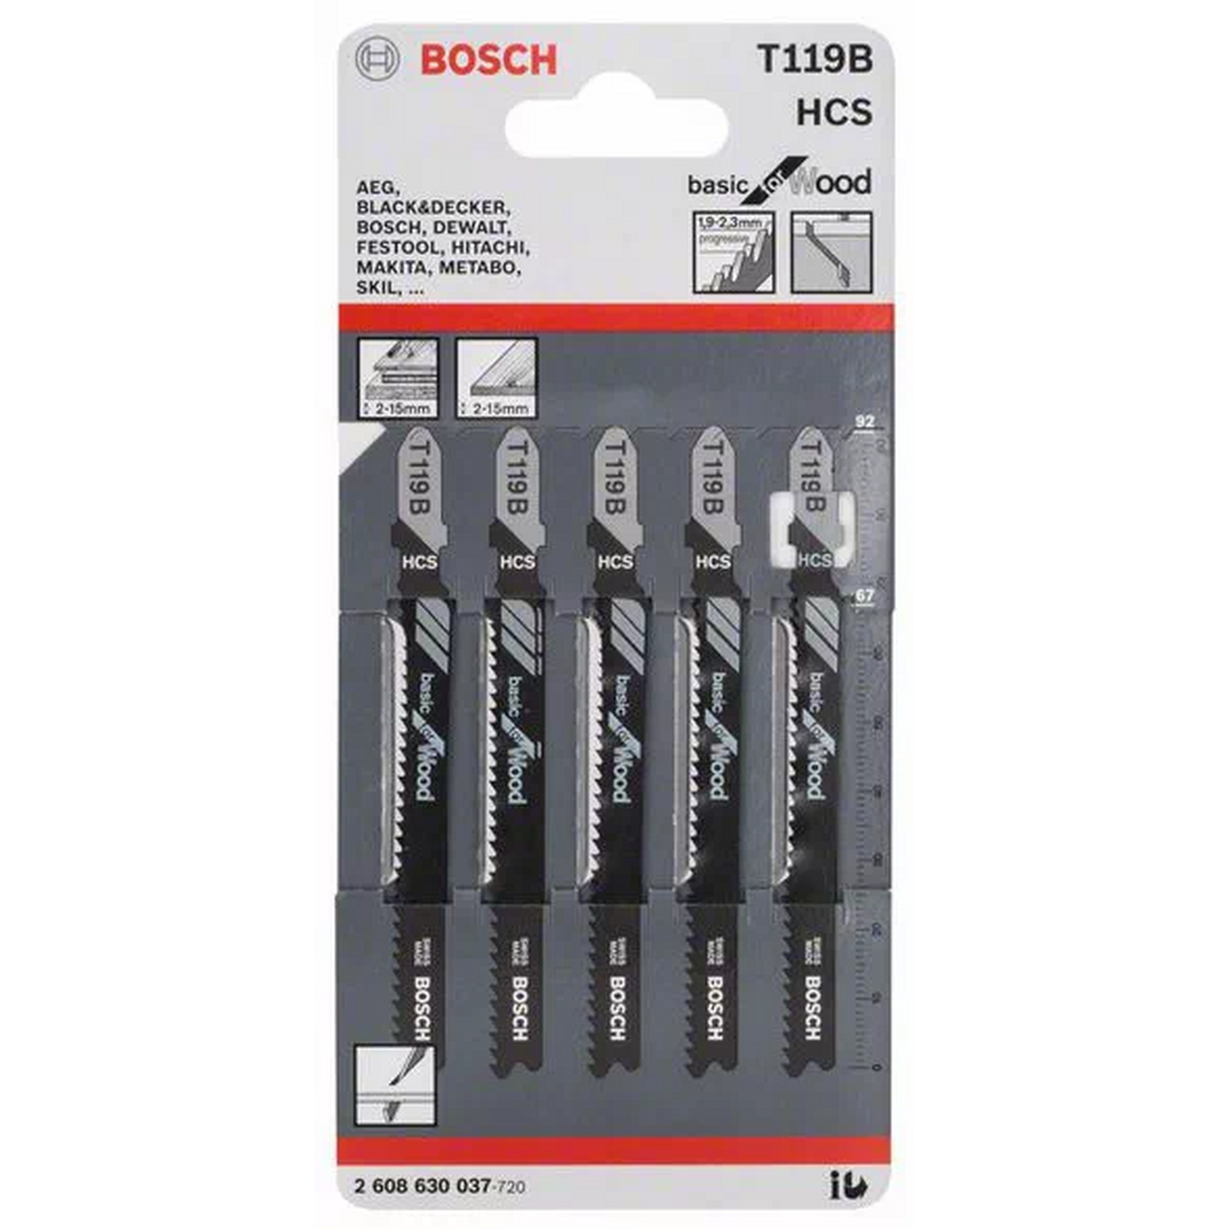 Пилки для лобзика Bosch Т119B HCS (5шт) 2608630037